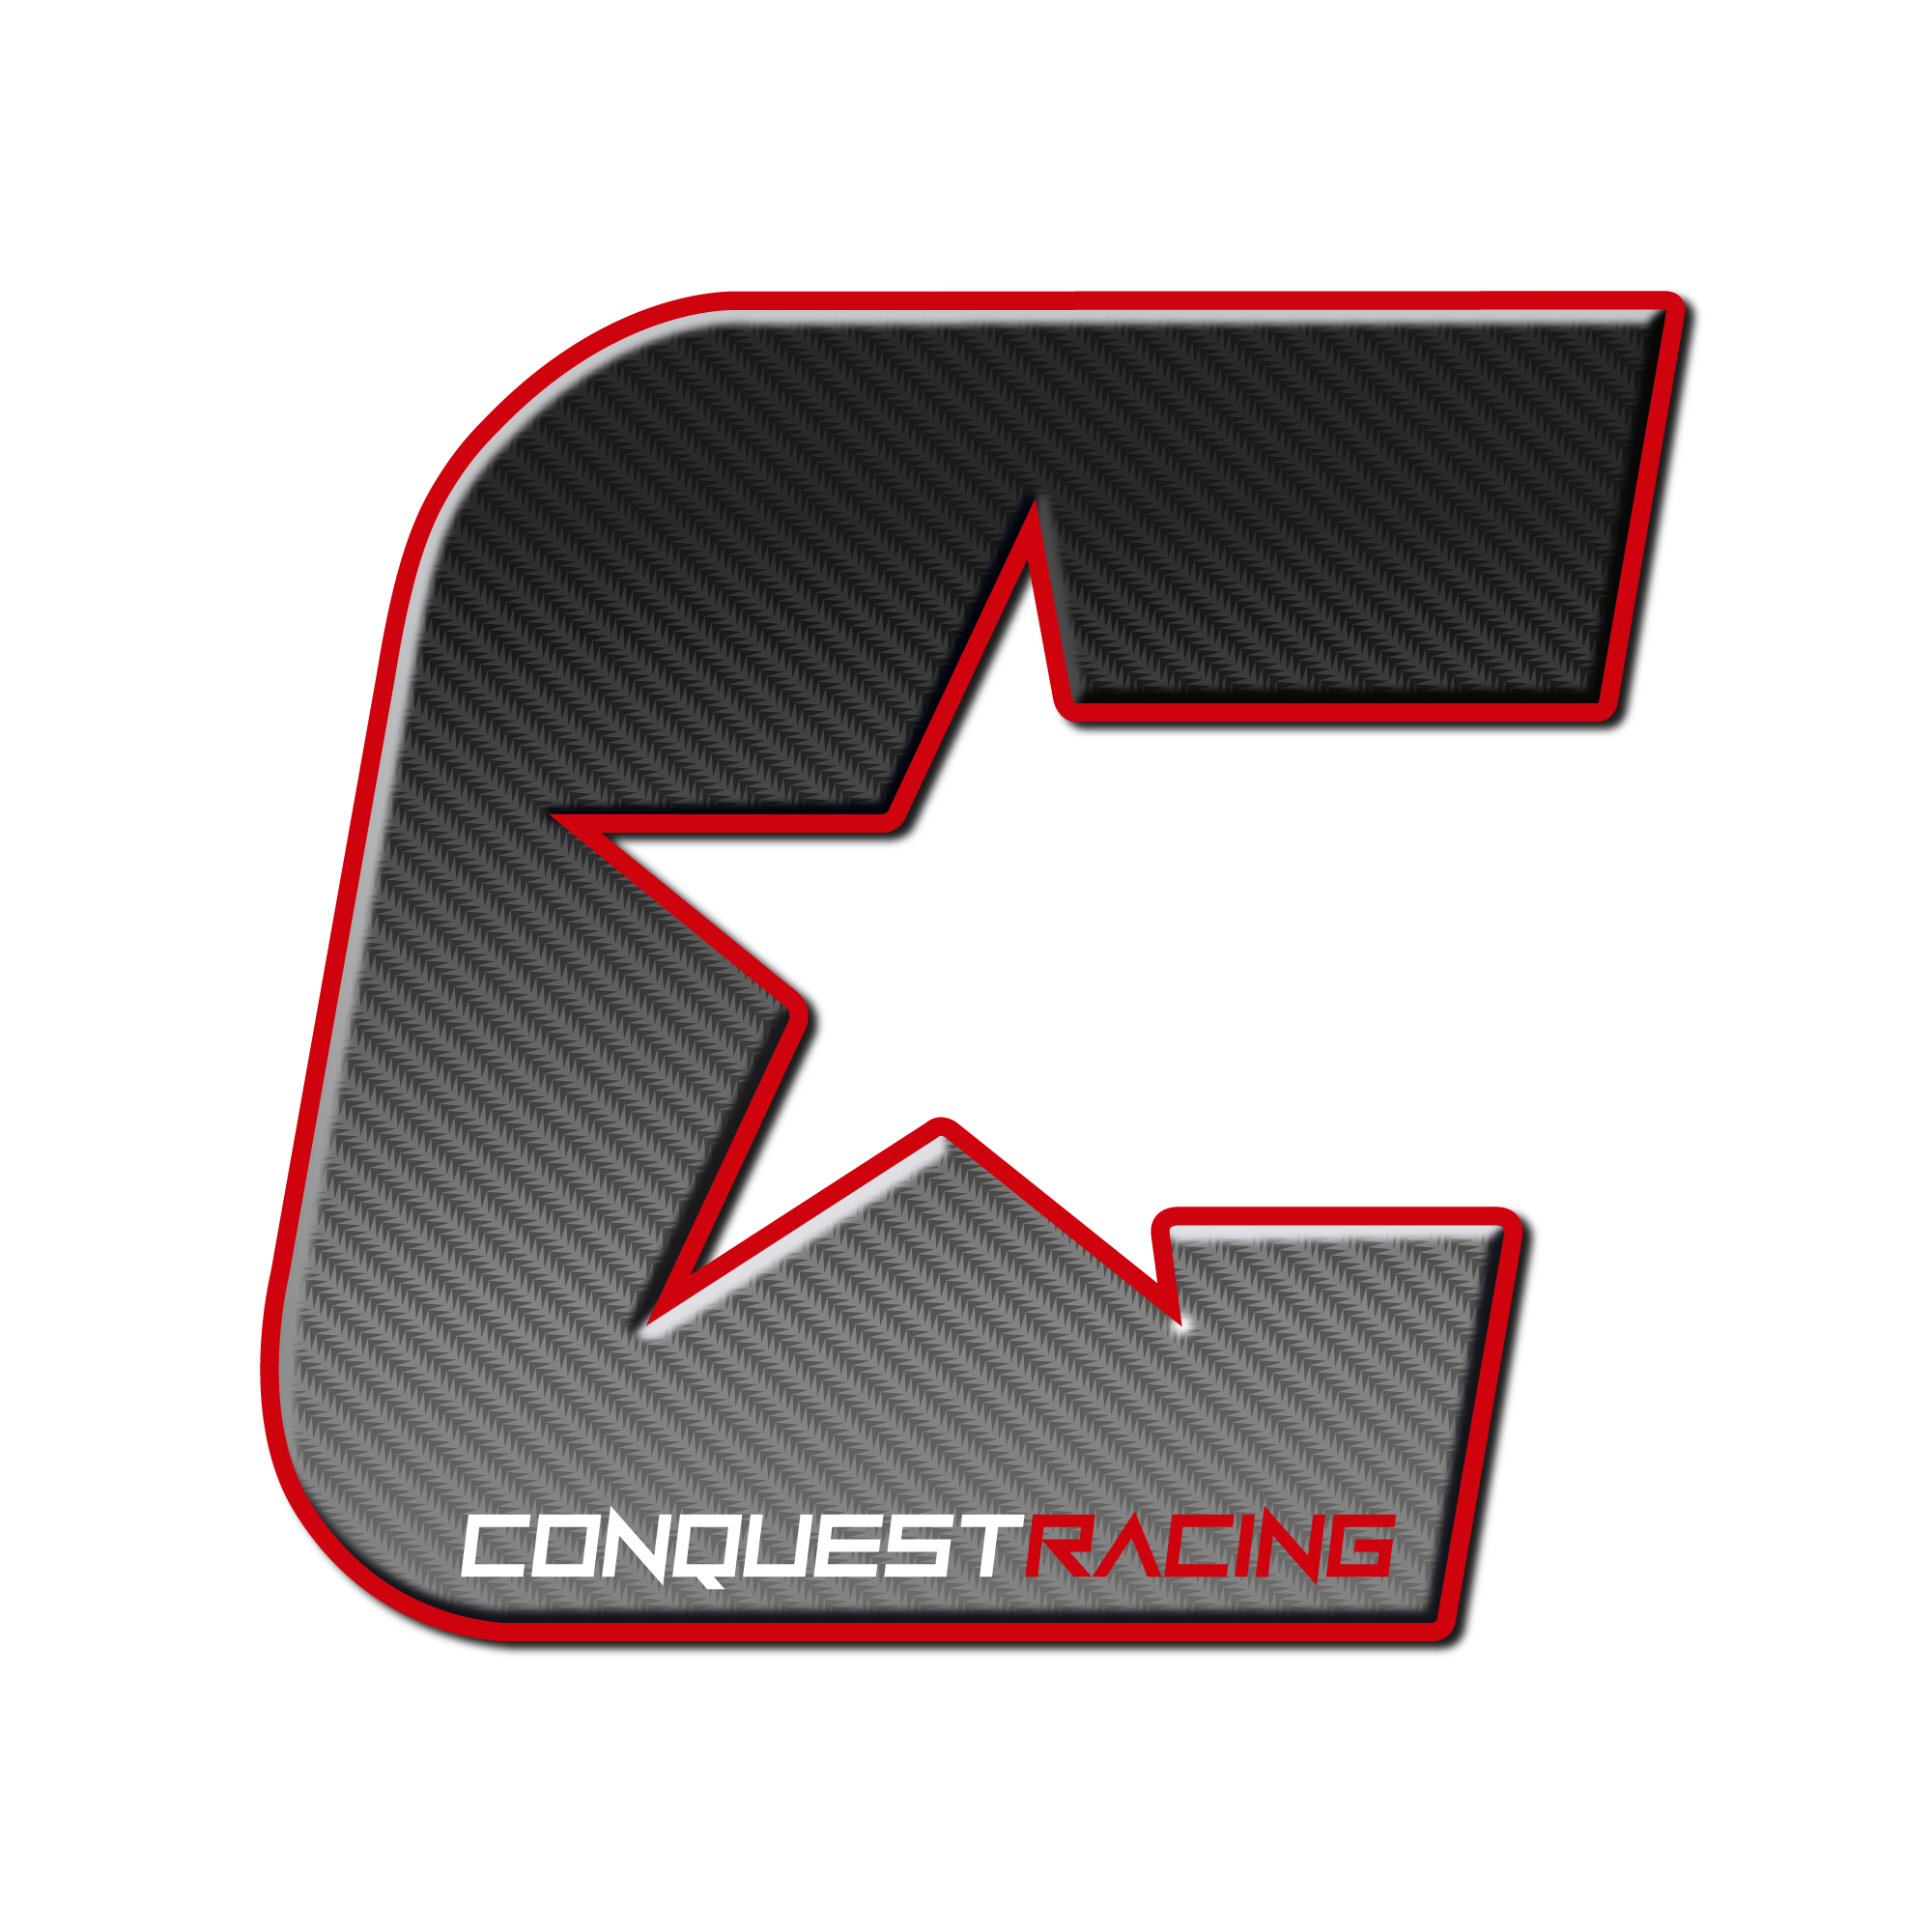 Conquest Racing Ltd